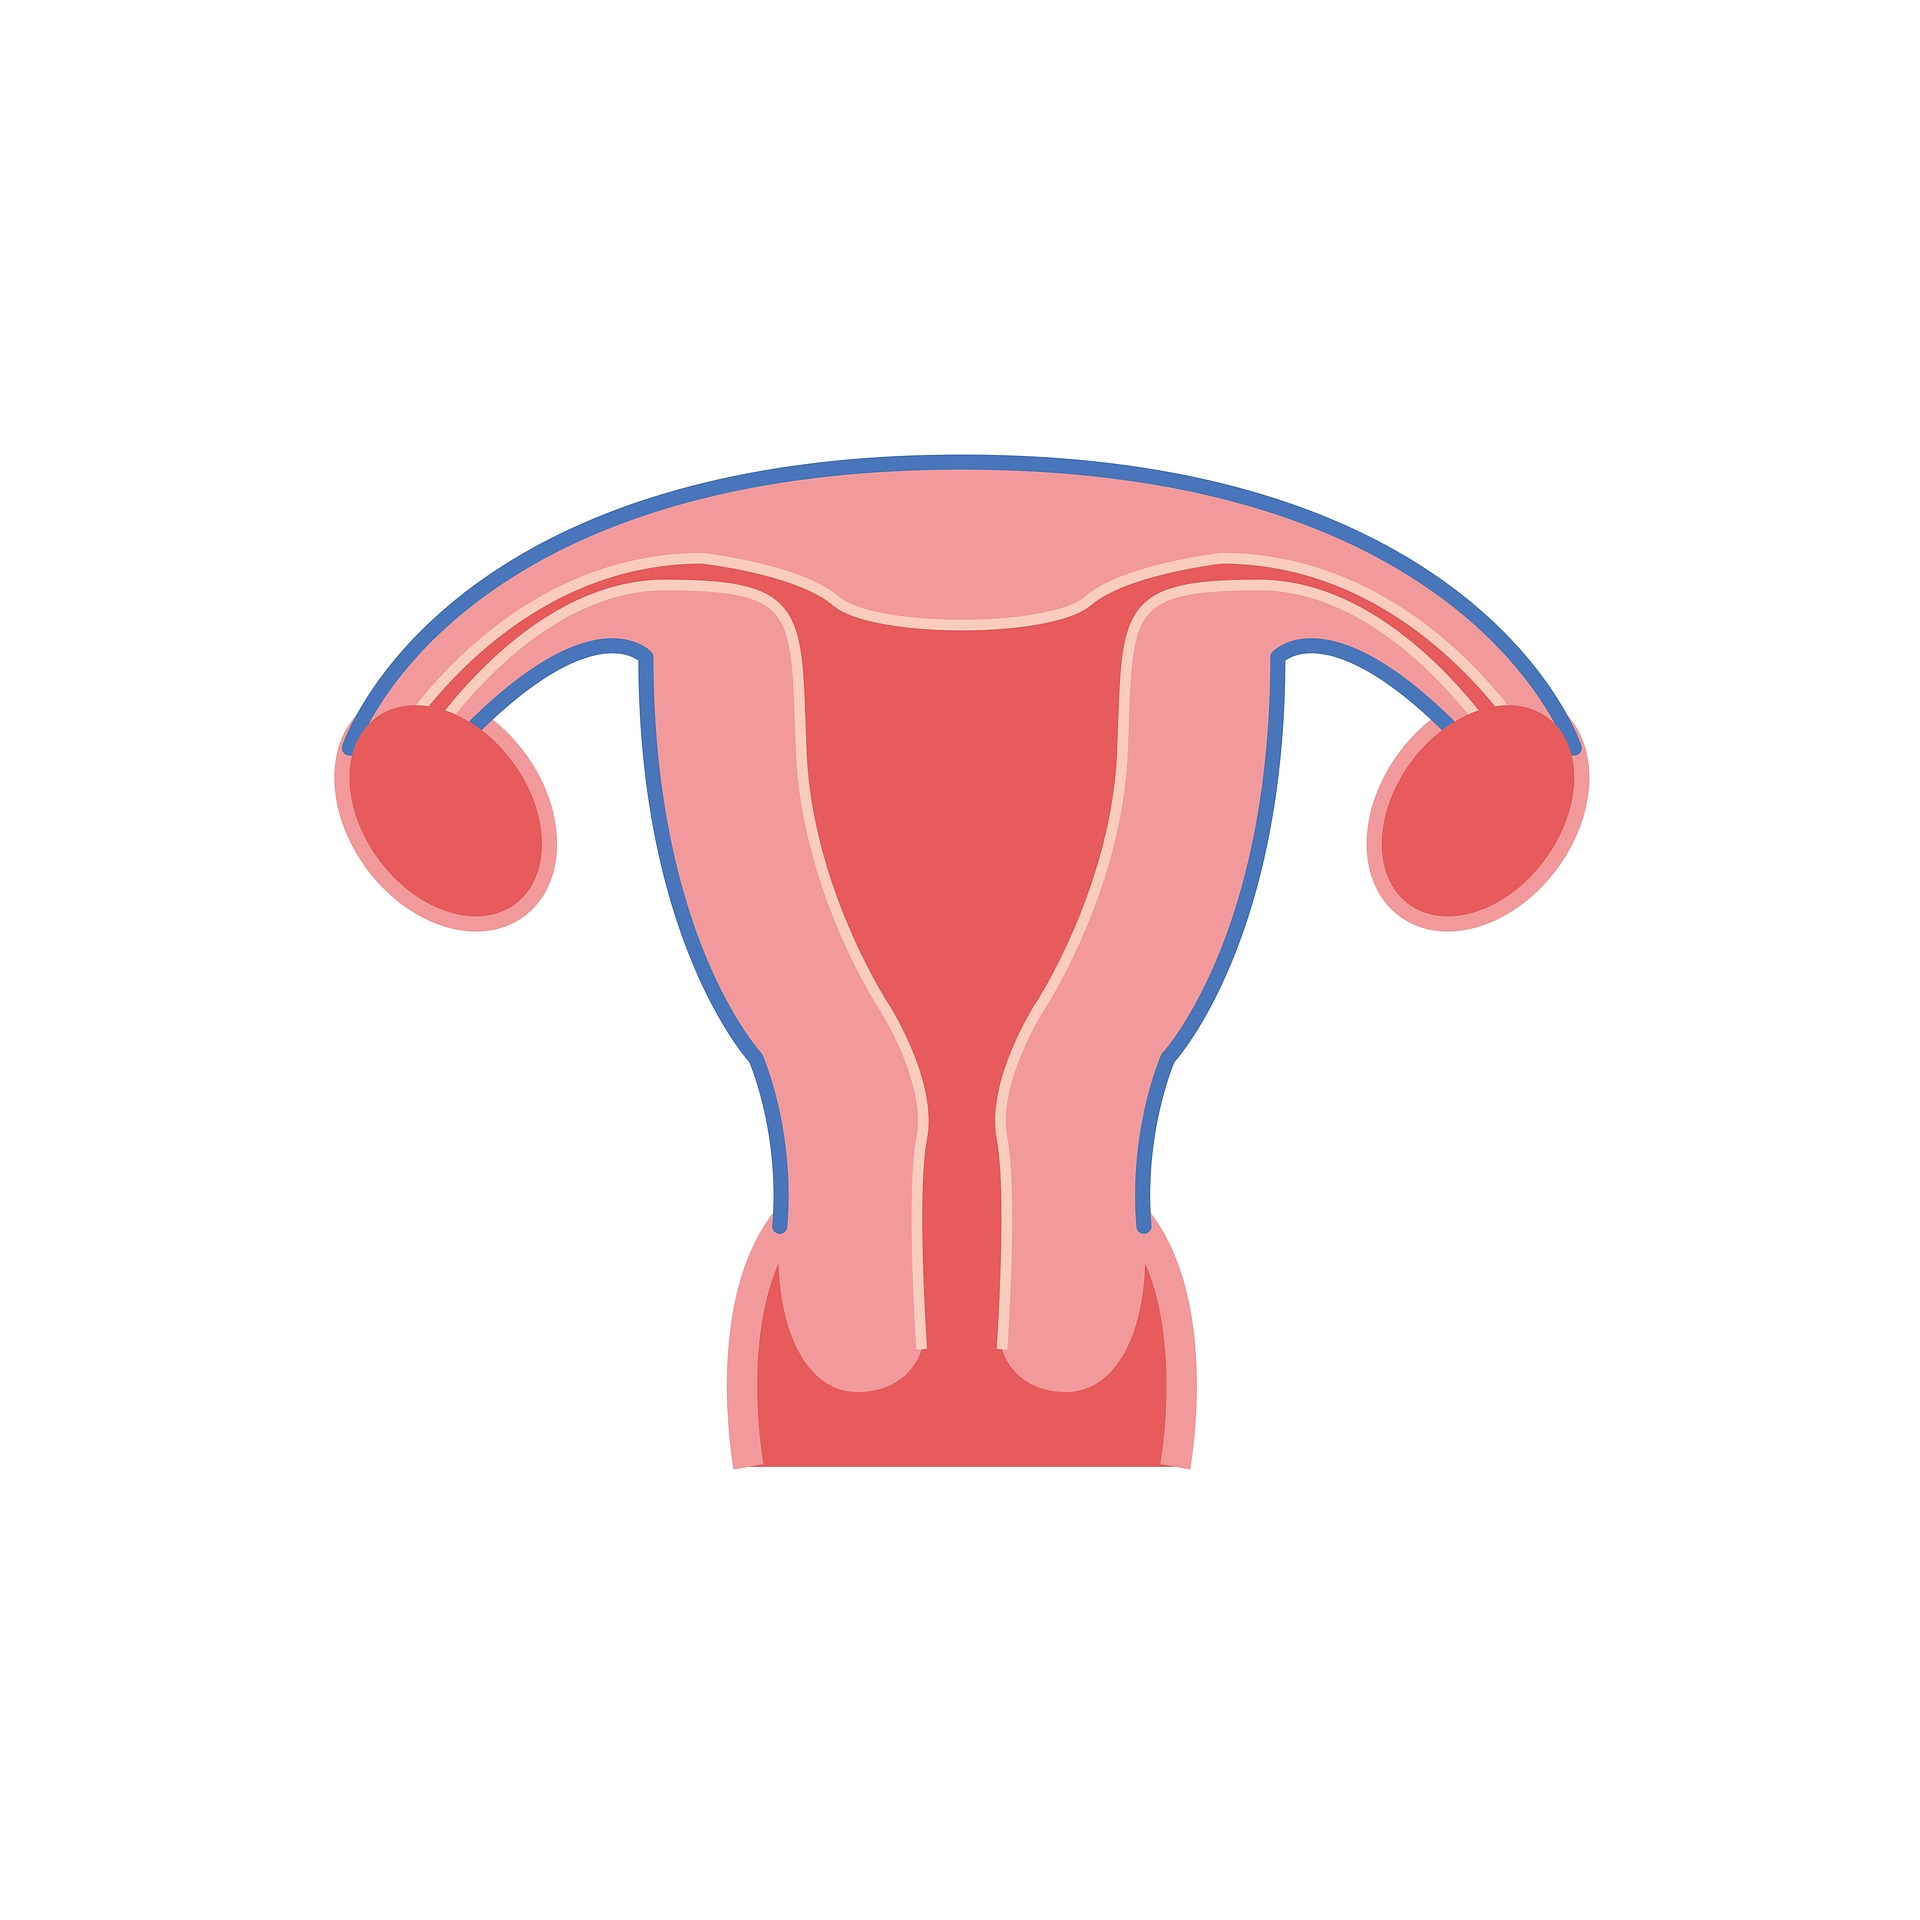 the-uterus-2947709_1920.jpg